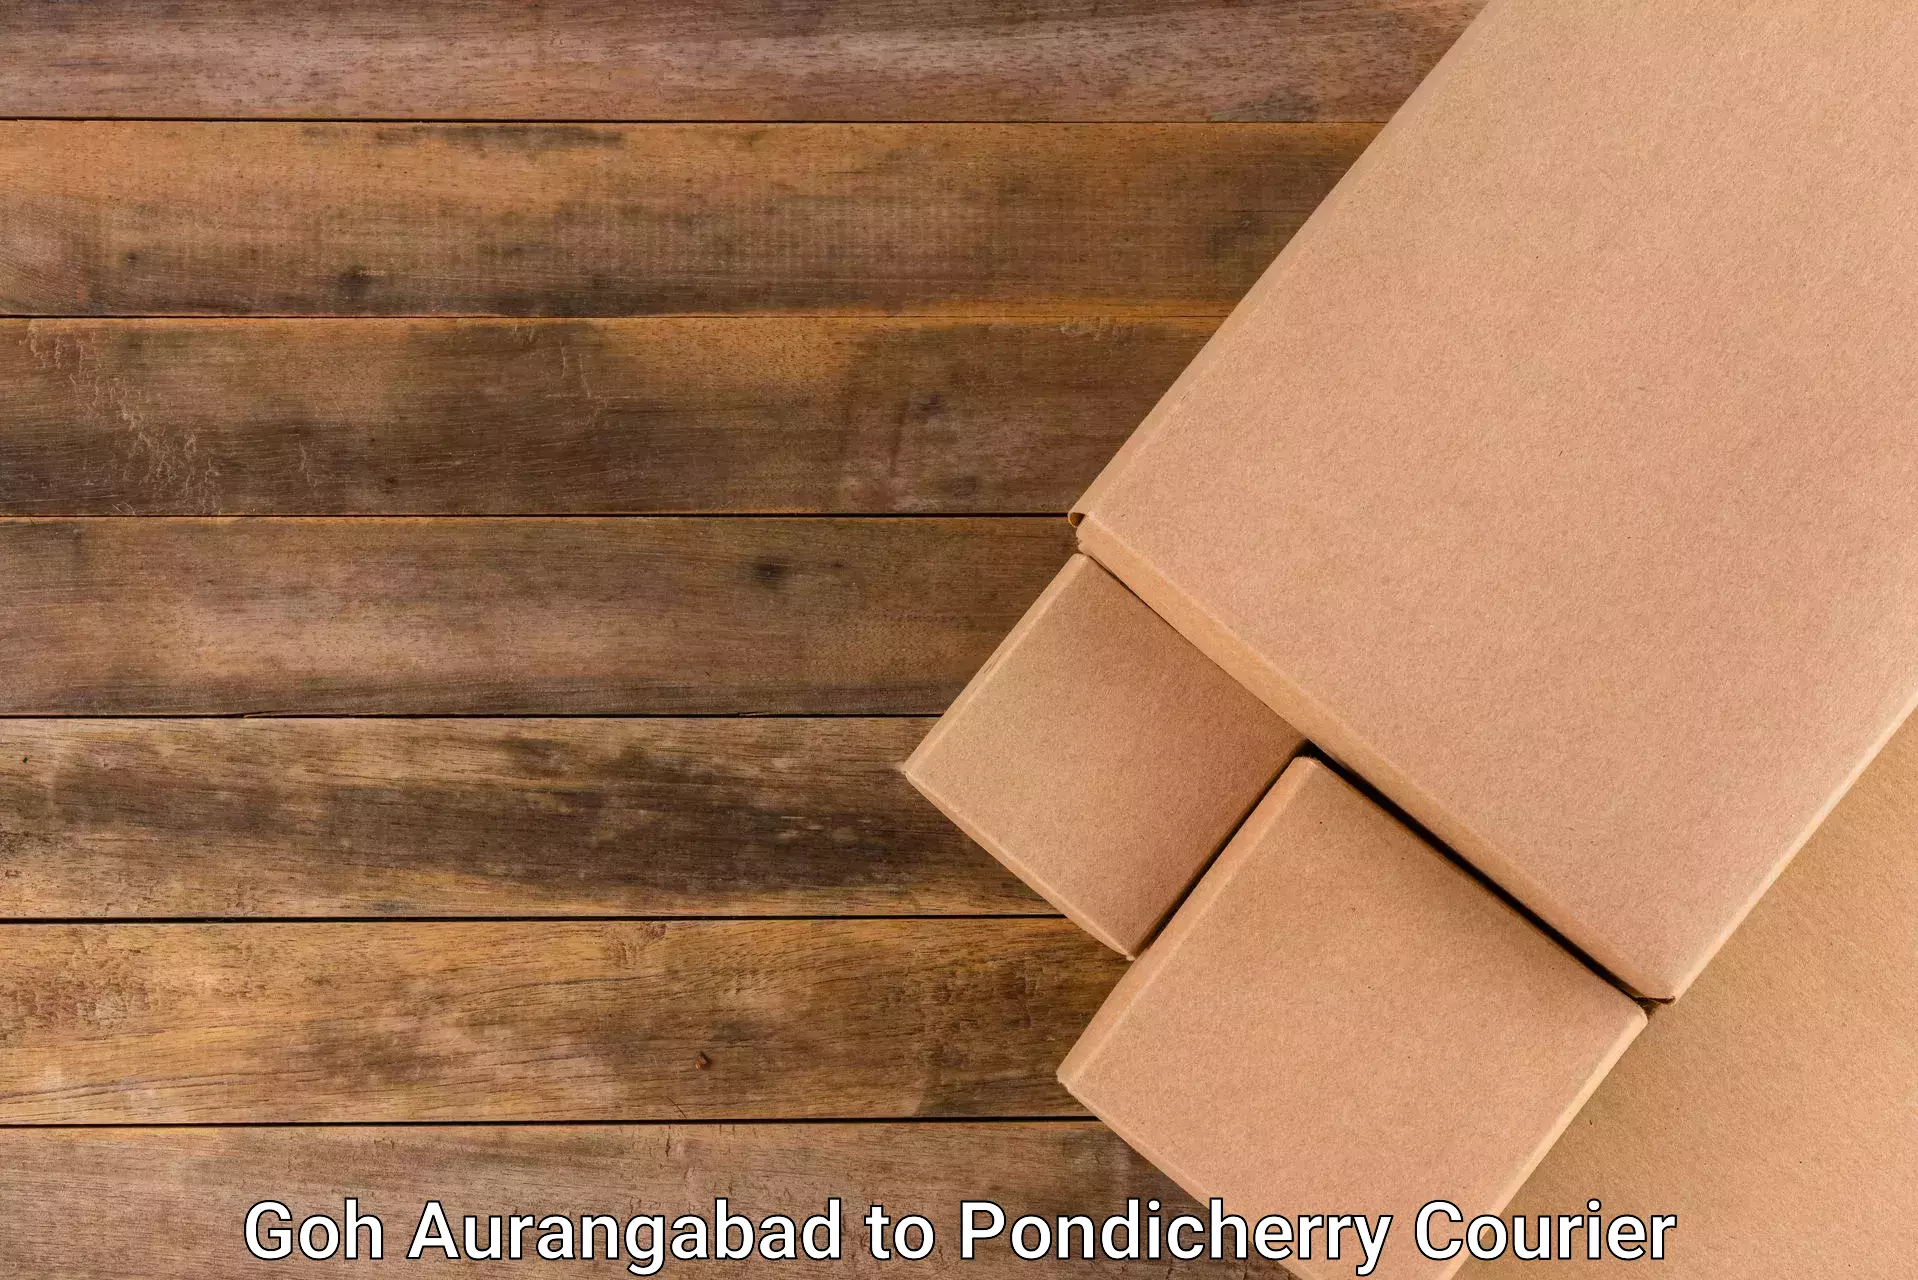 Nationwide courier service in Goh Aurangabad to Pondicherry